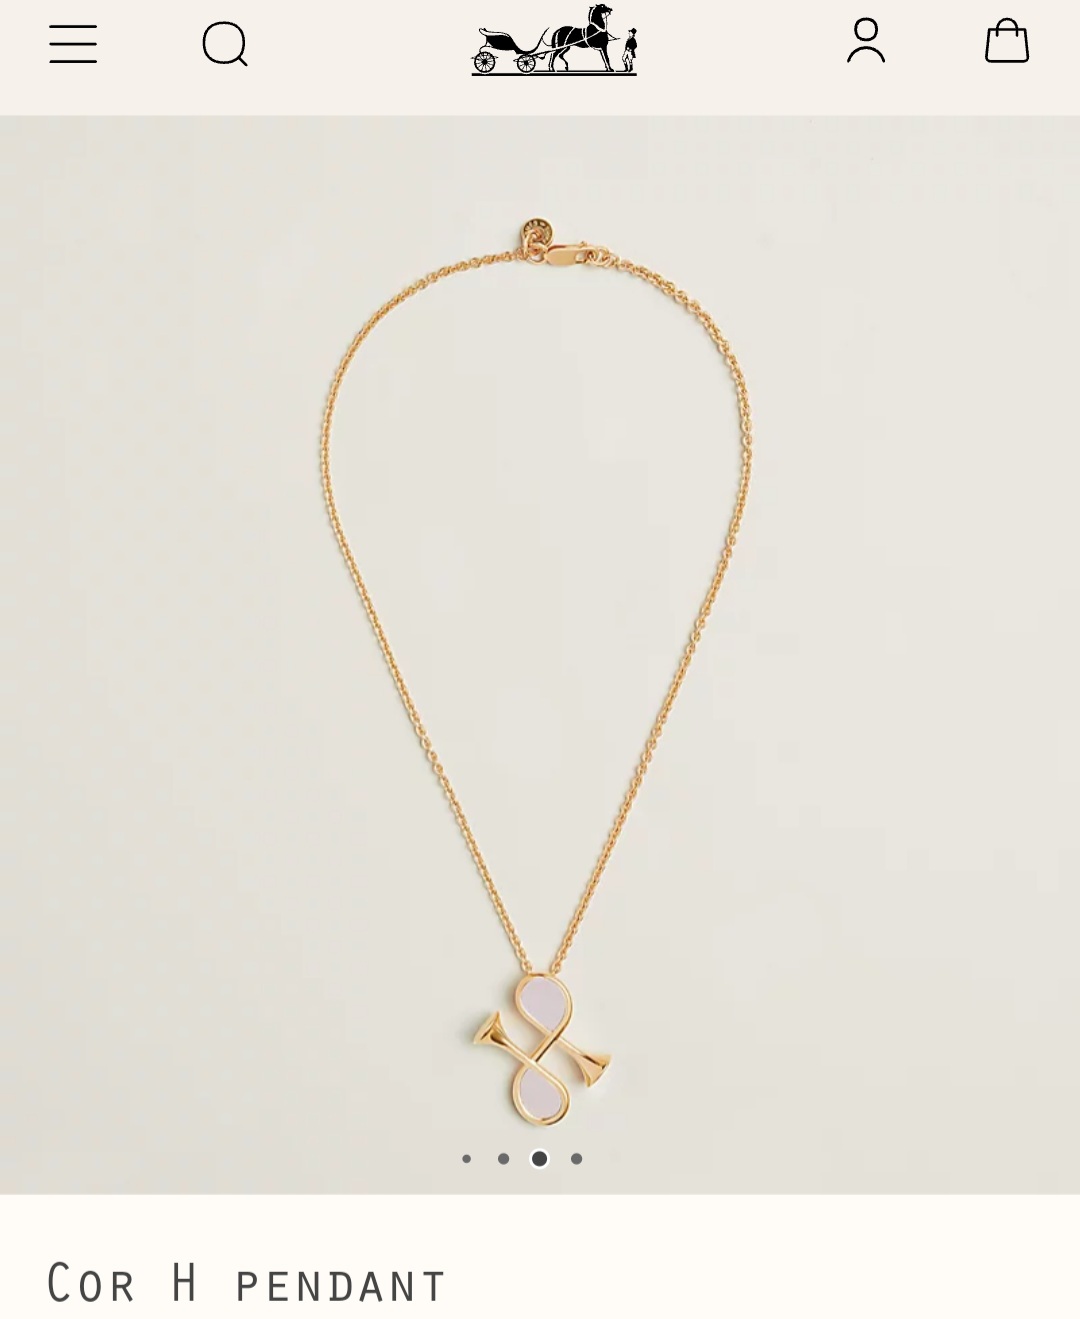 Hermes Cor H pendant necklace